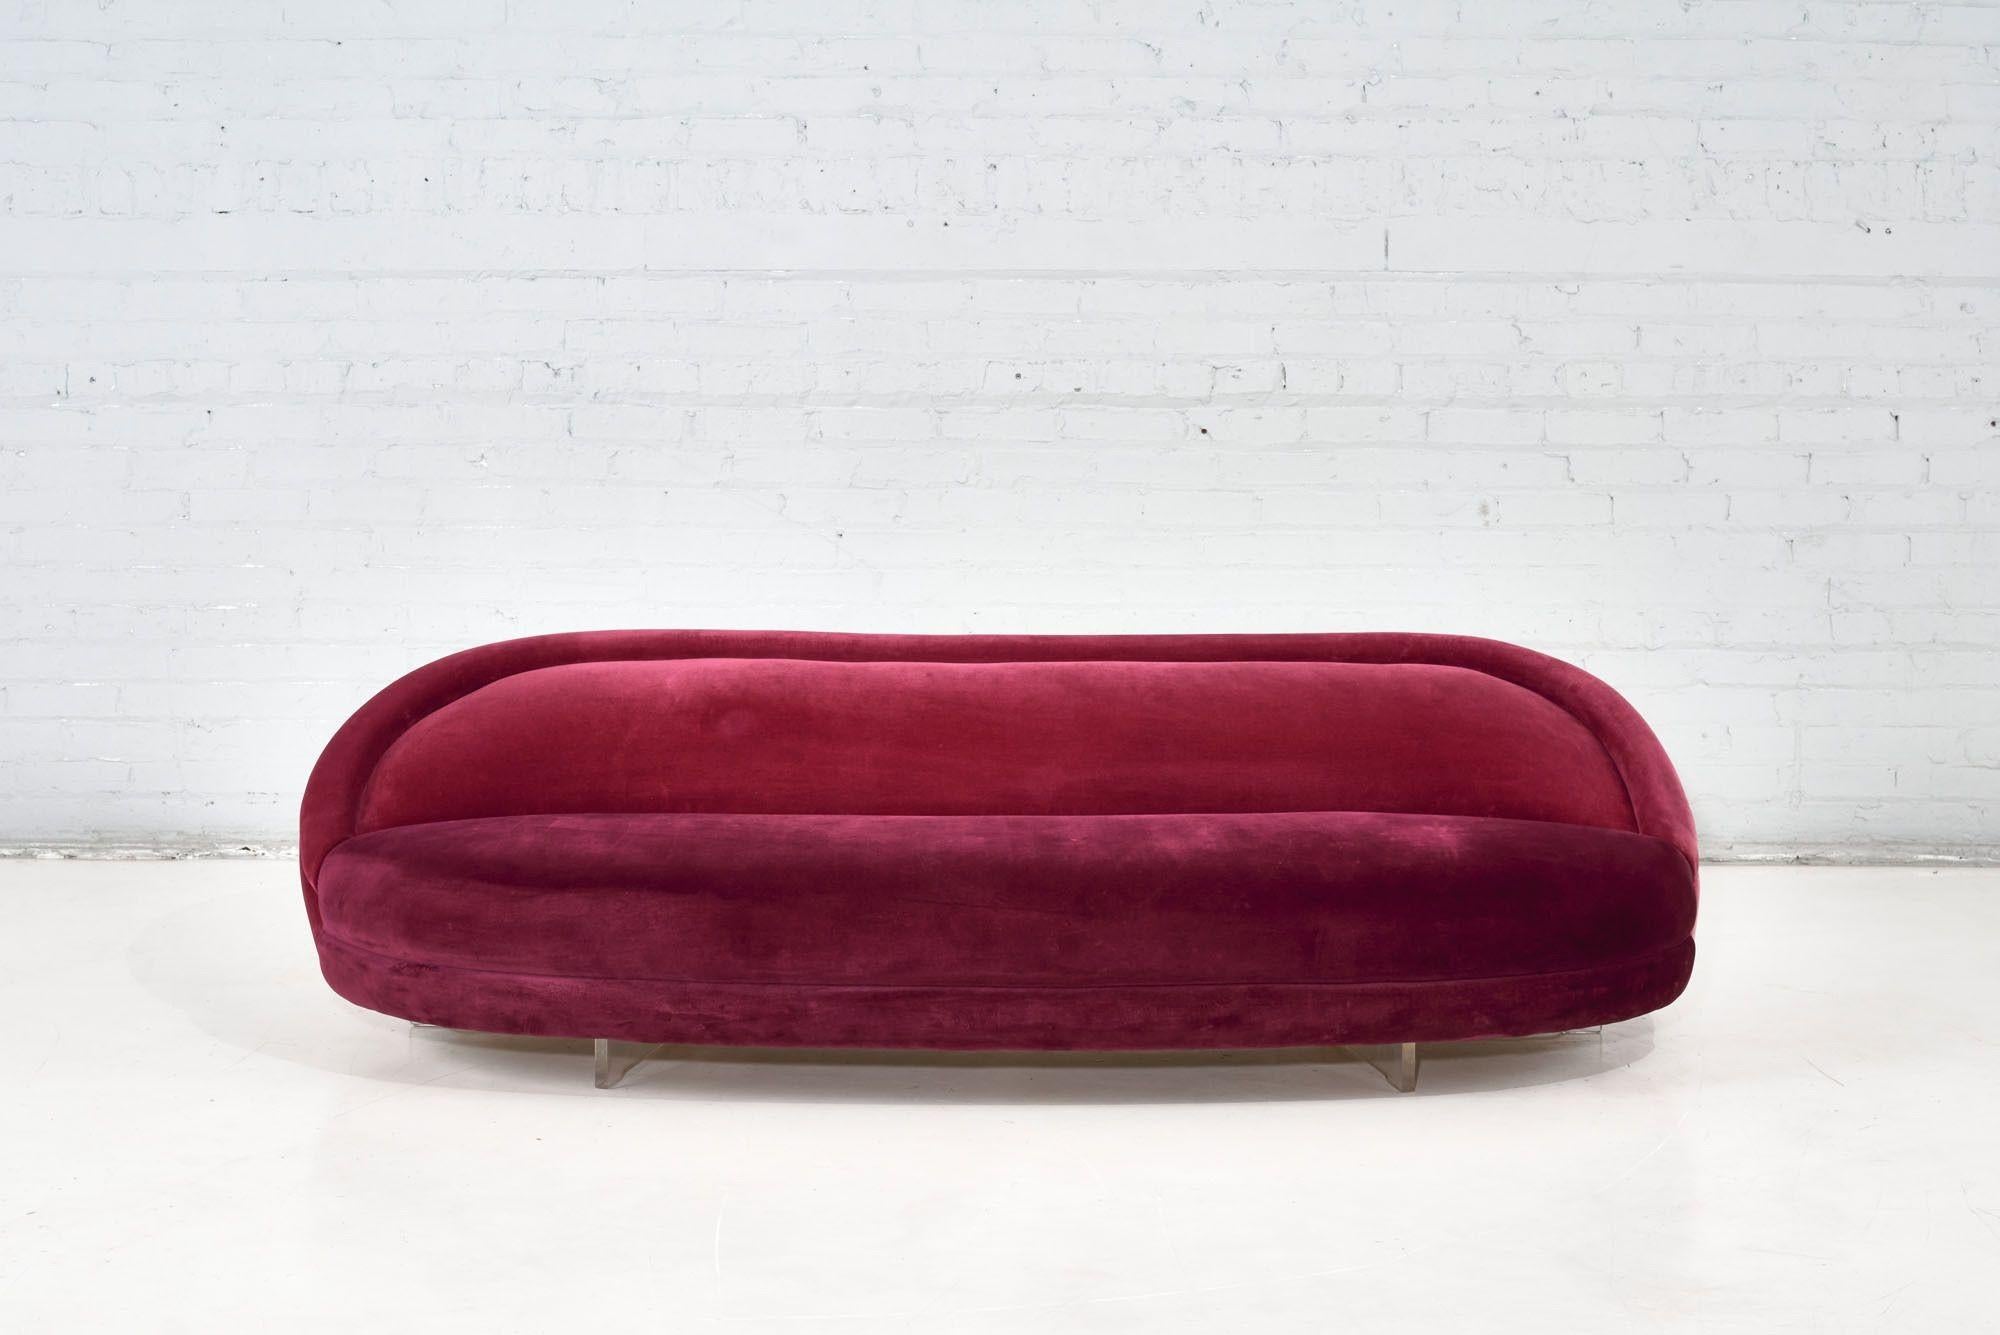 Vladimir Kagan rasberry silk velvet sofa/settee with lucite legs. Original upholstery.